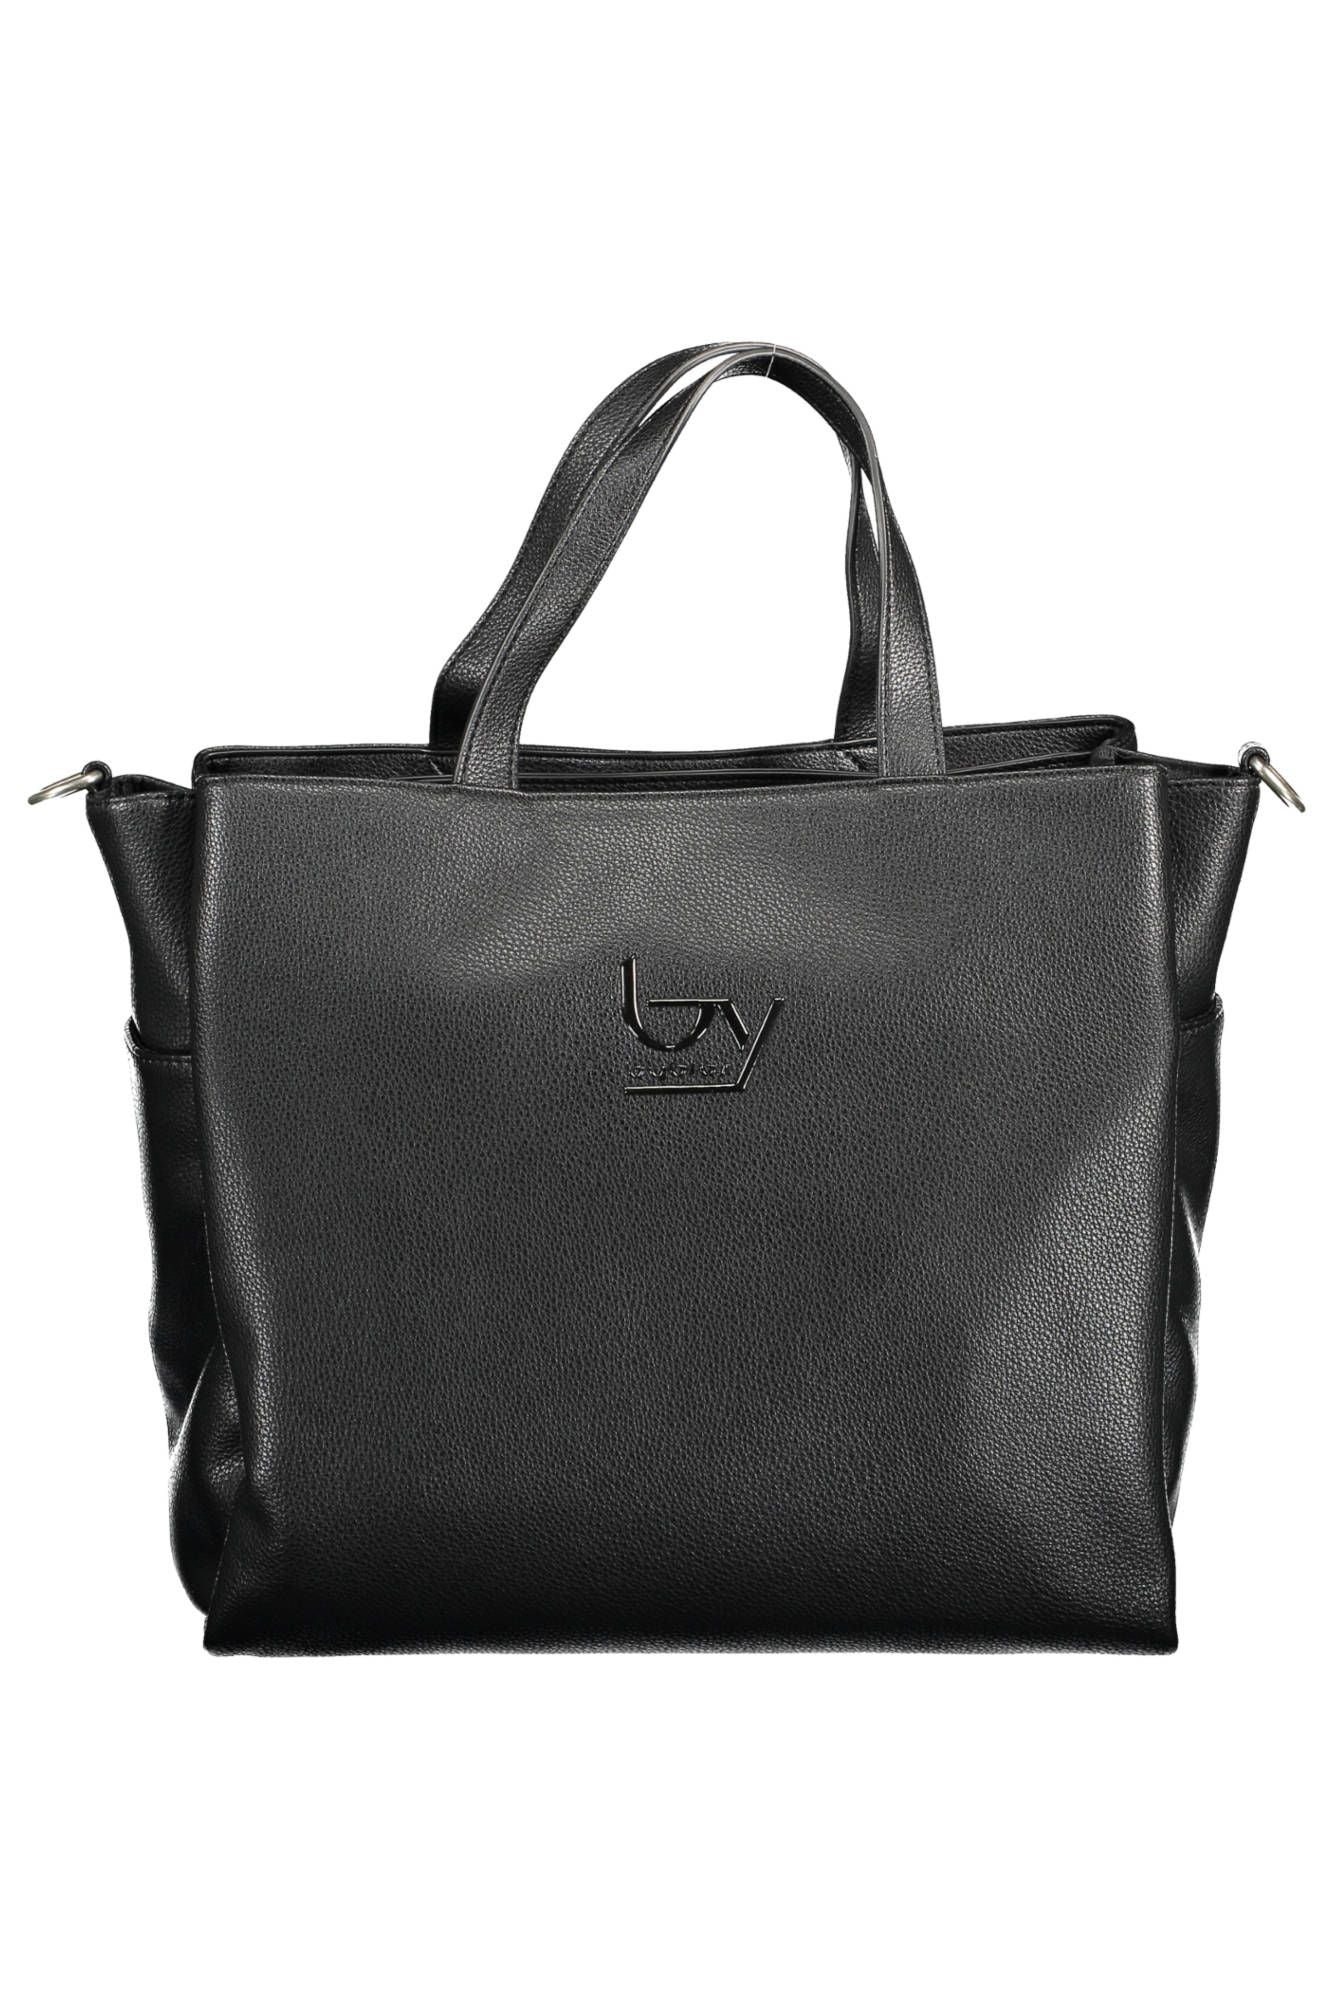 Chic Black Multi-Pocket Handbag